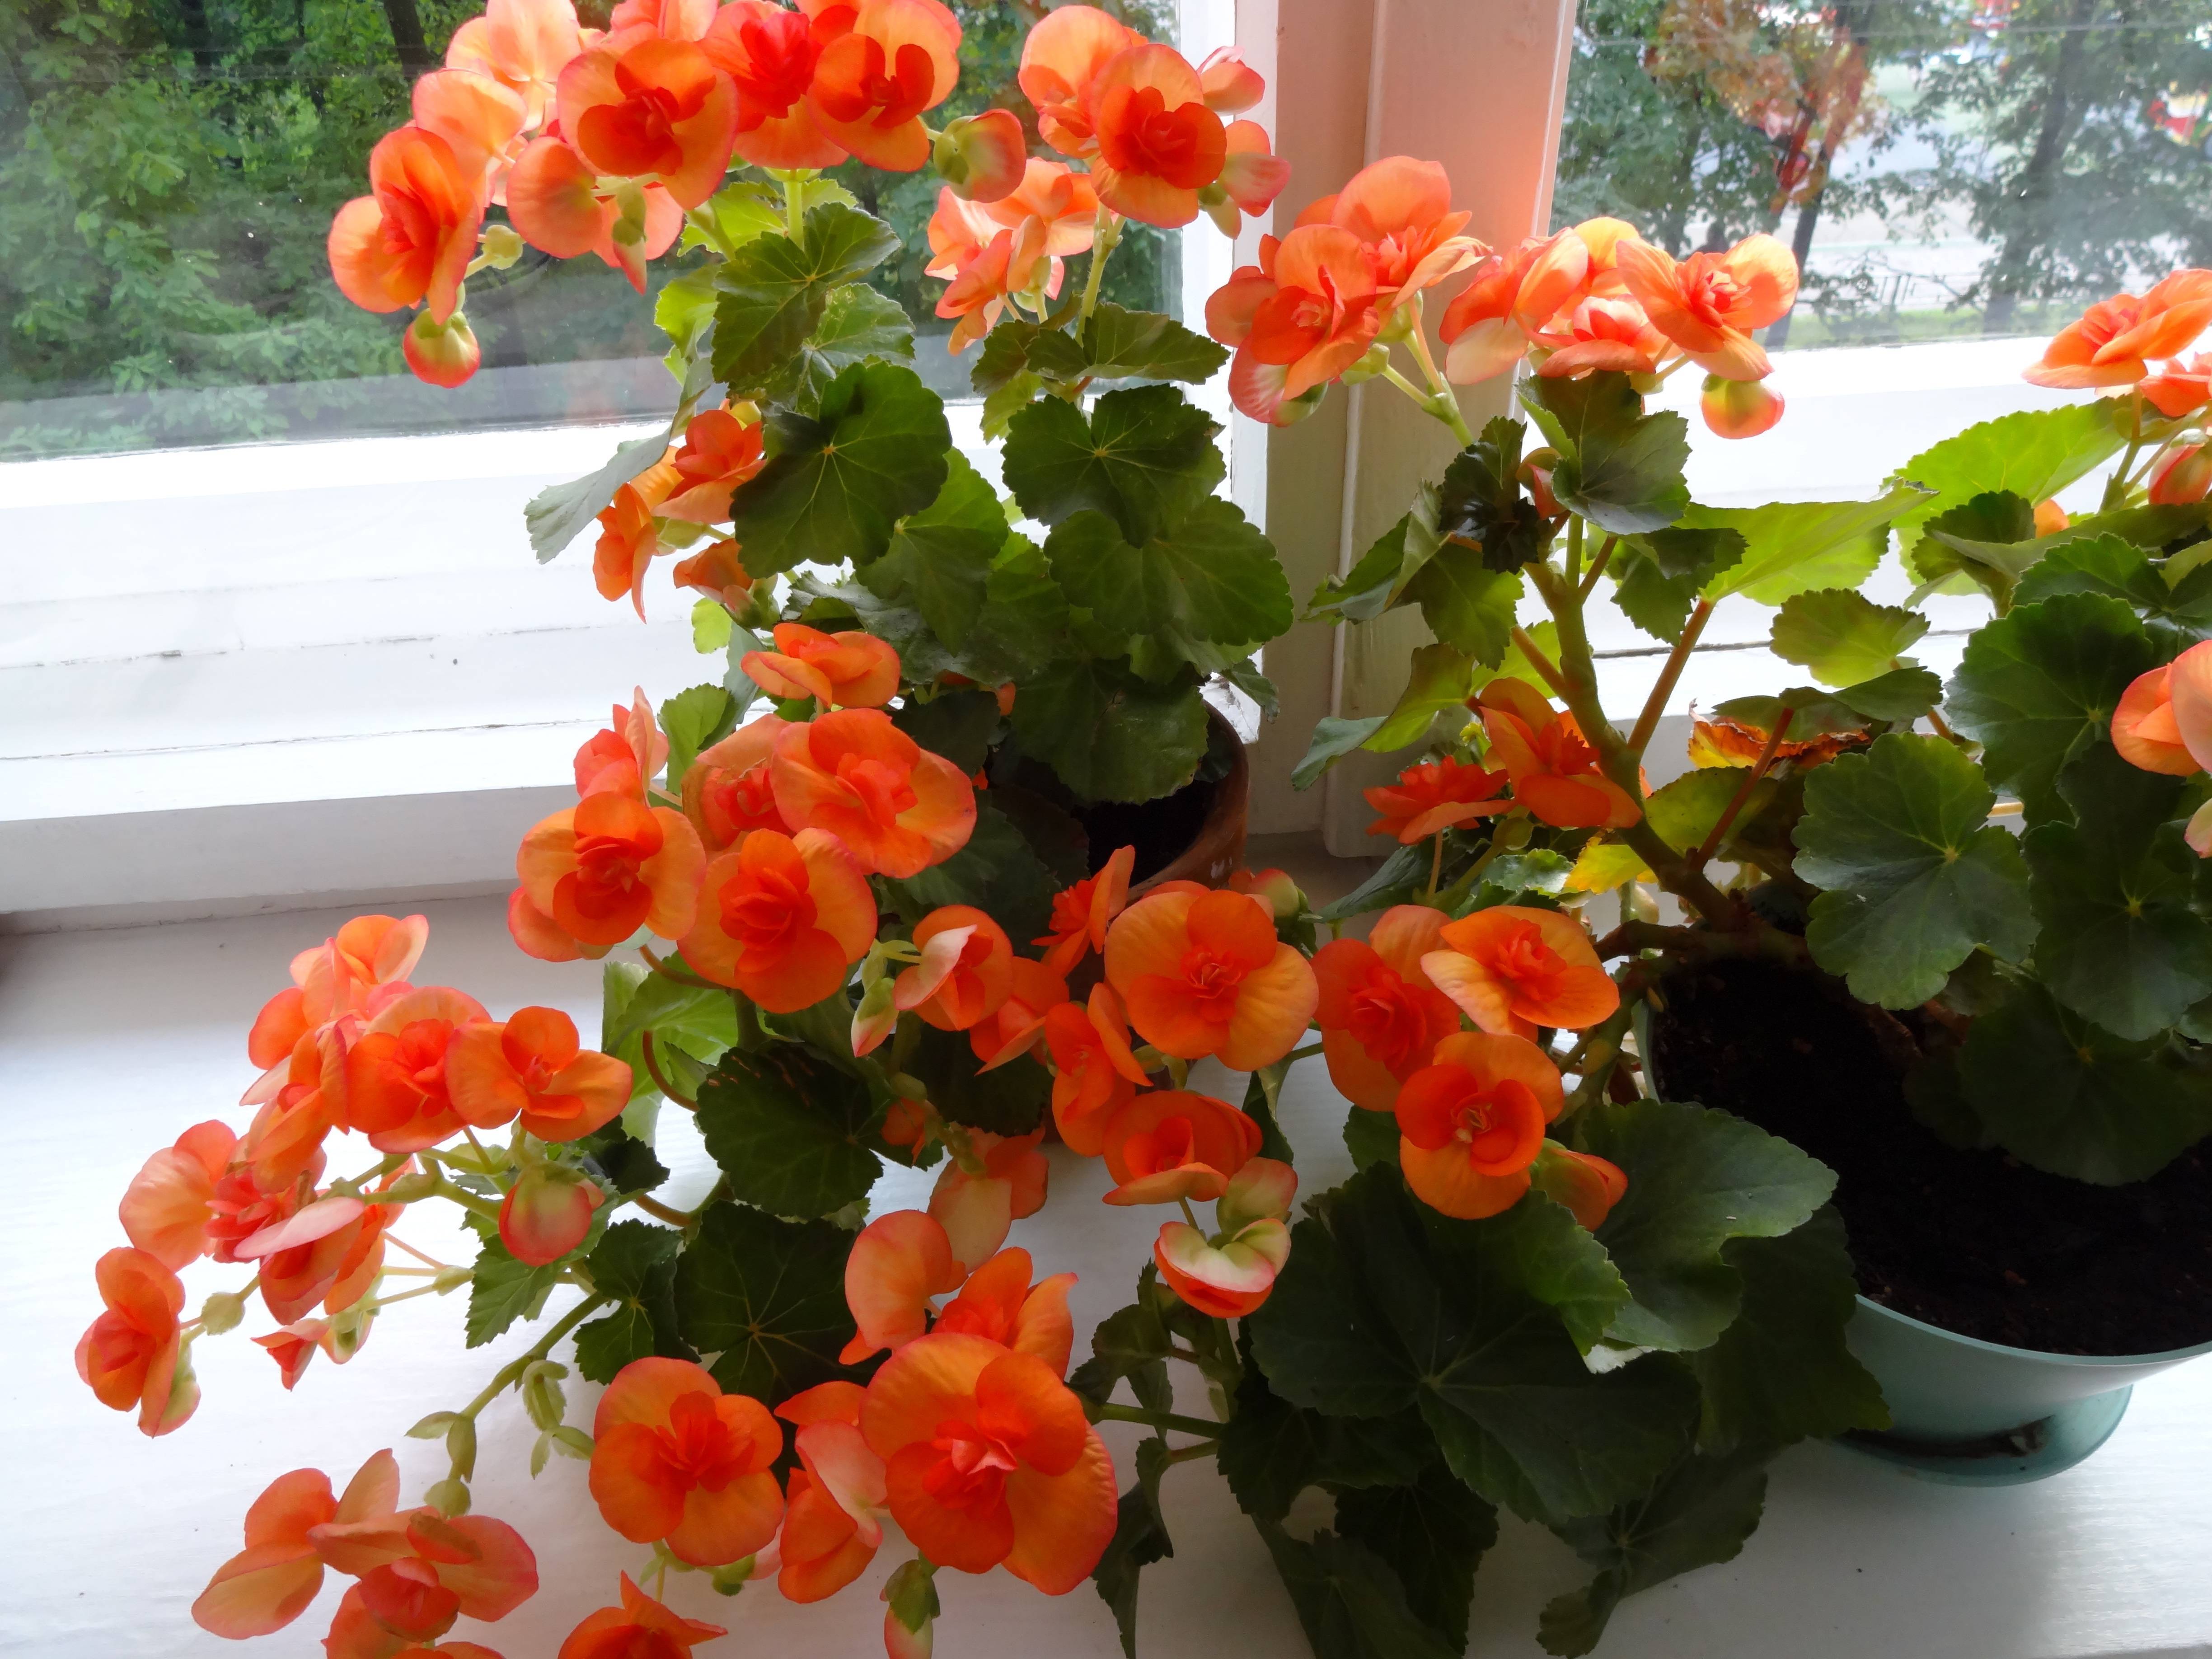 Цветущие домашние цветы: названия комнатных растений по алфавиту, сортировка видов по форме листьев и как узнать, что за цветок при помощи интернета